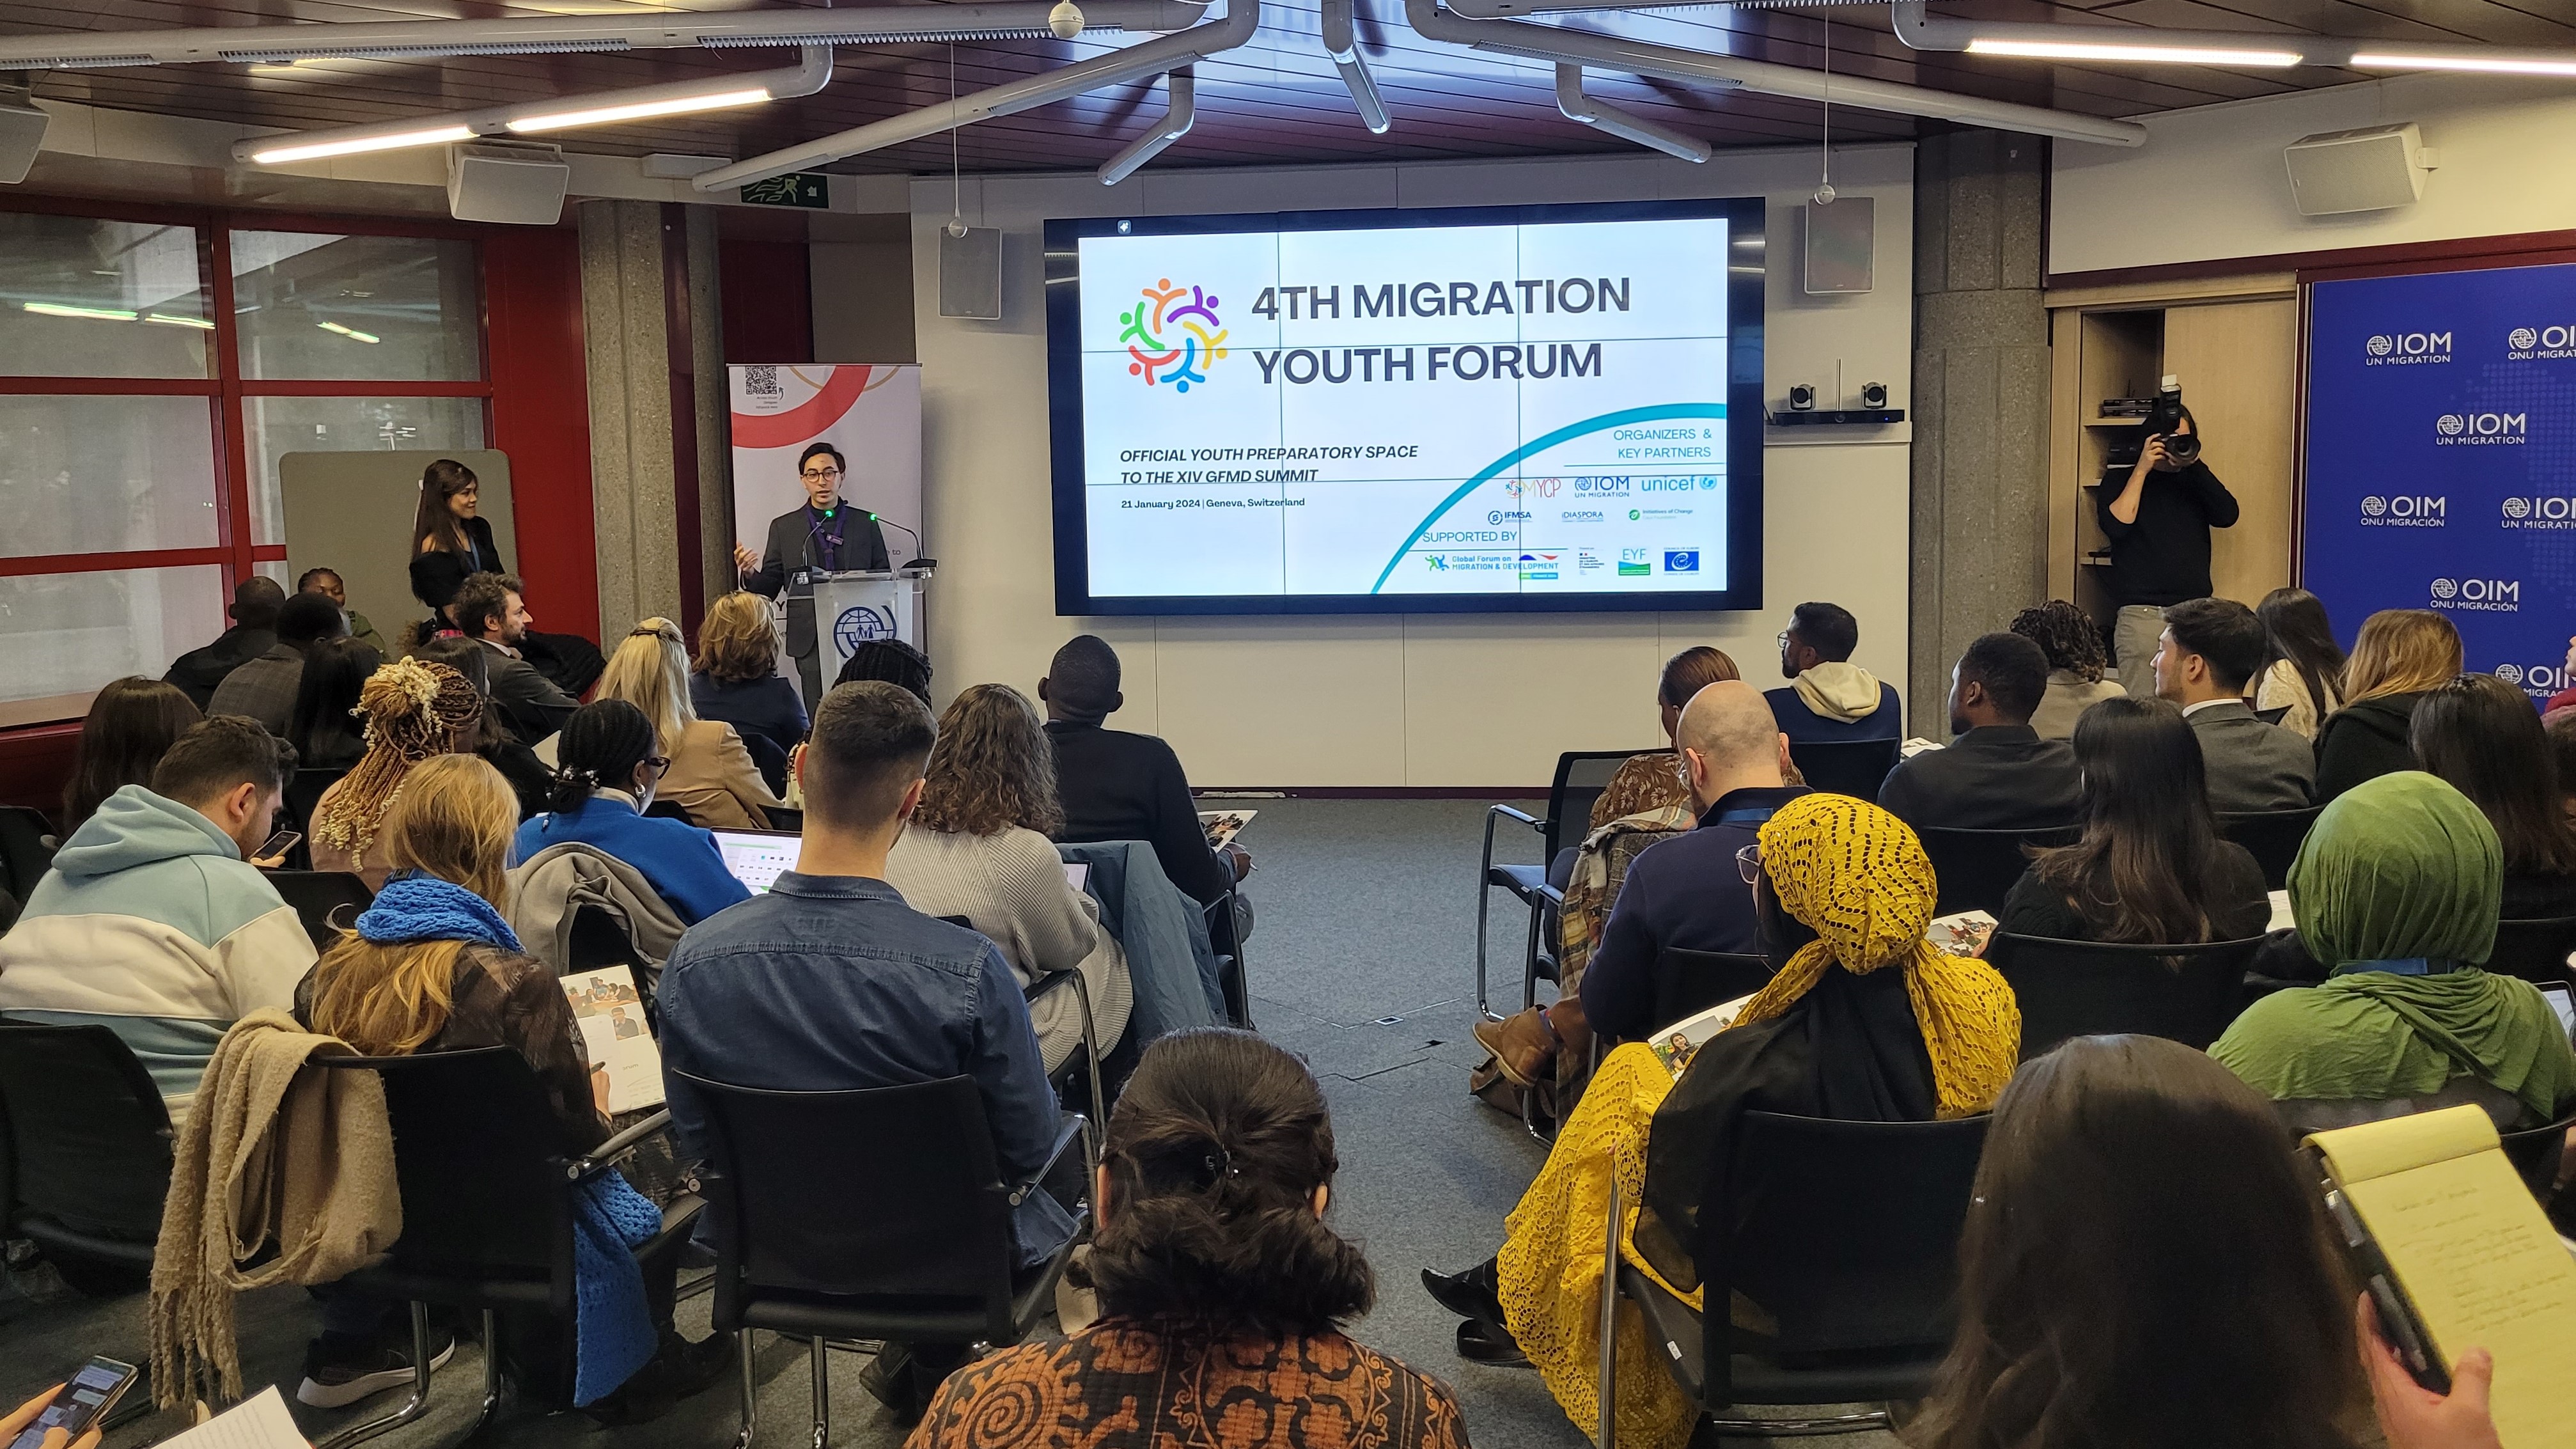 Visite de suivi au MYCP – Migration Youth and Children Platform pour leur activité internationale “Migration Youth Forum”